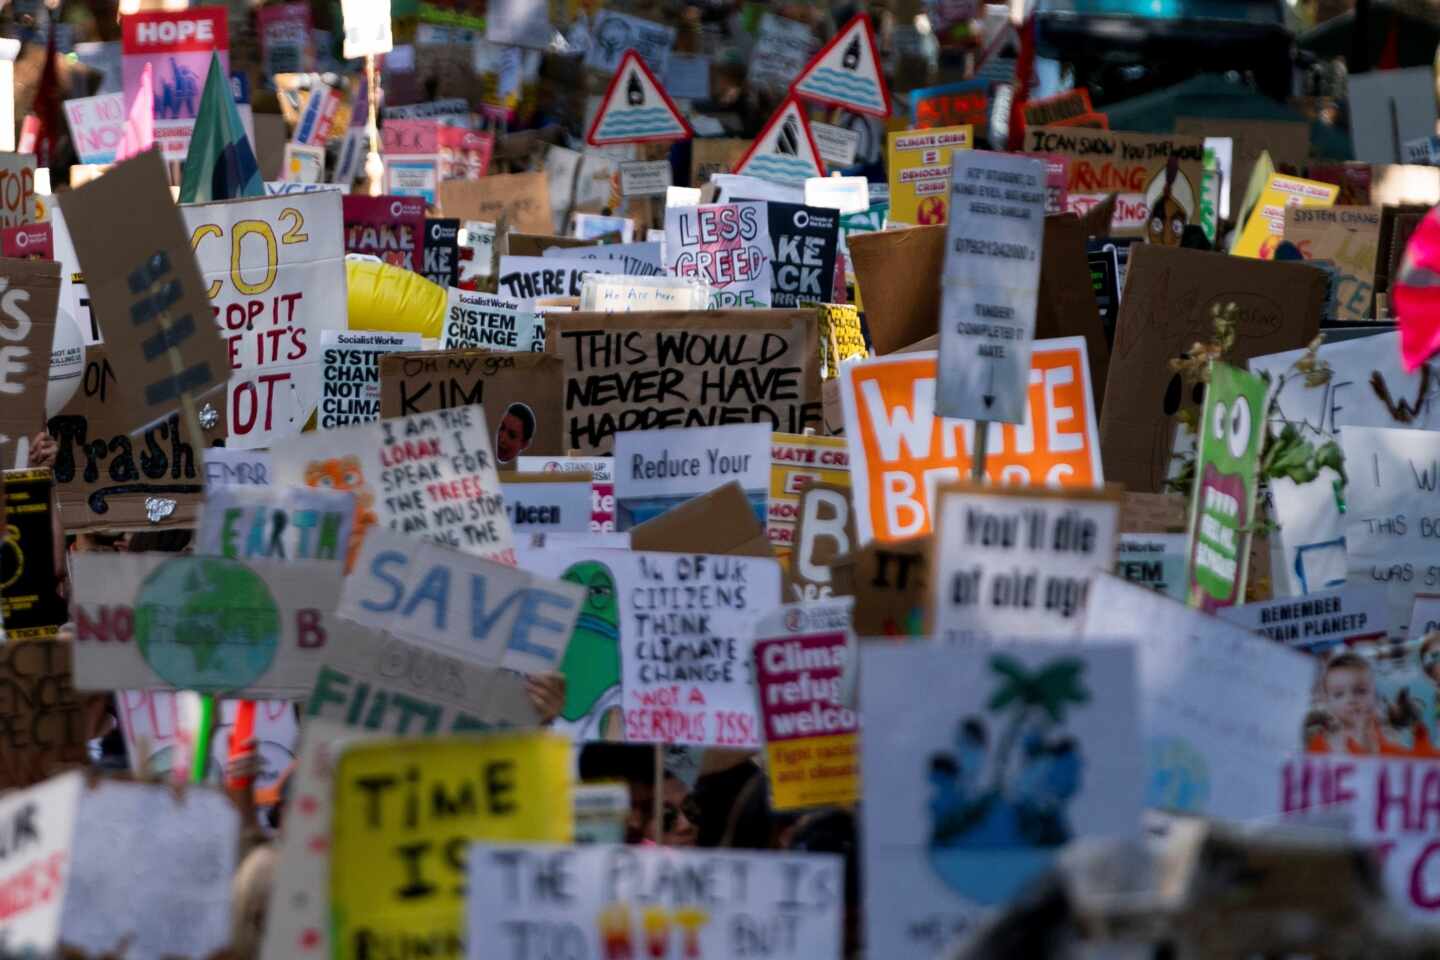 Cientos de personas acuden a una marcha del colectivo Fridays for Future en Londres